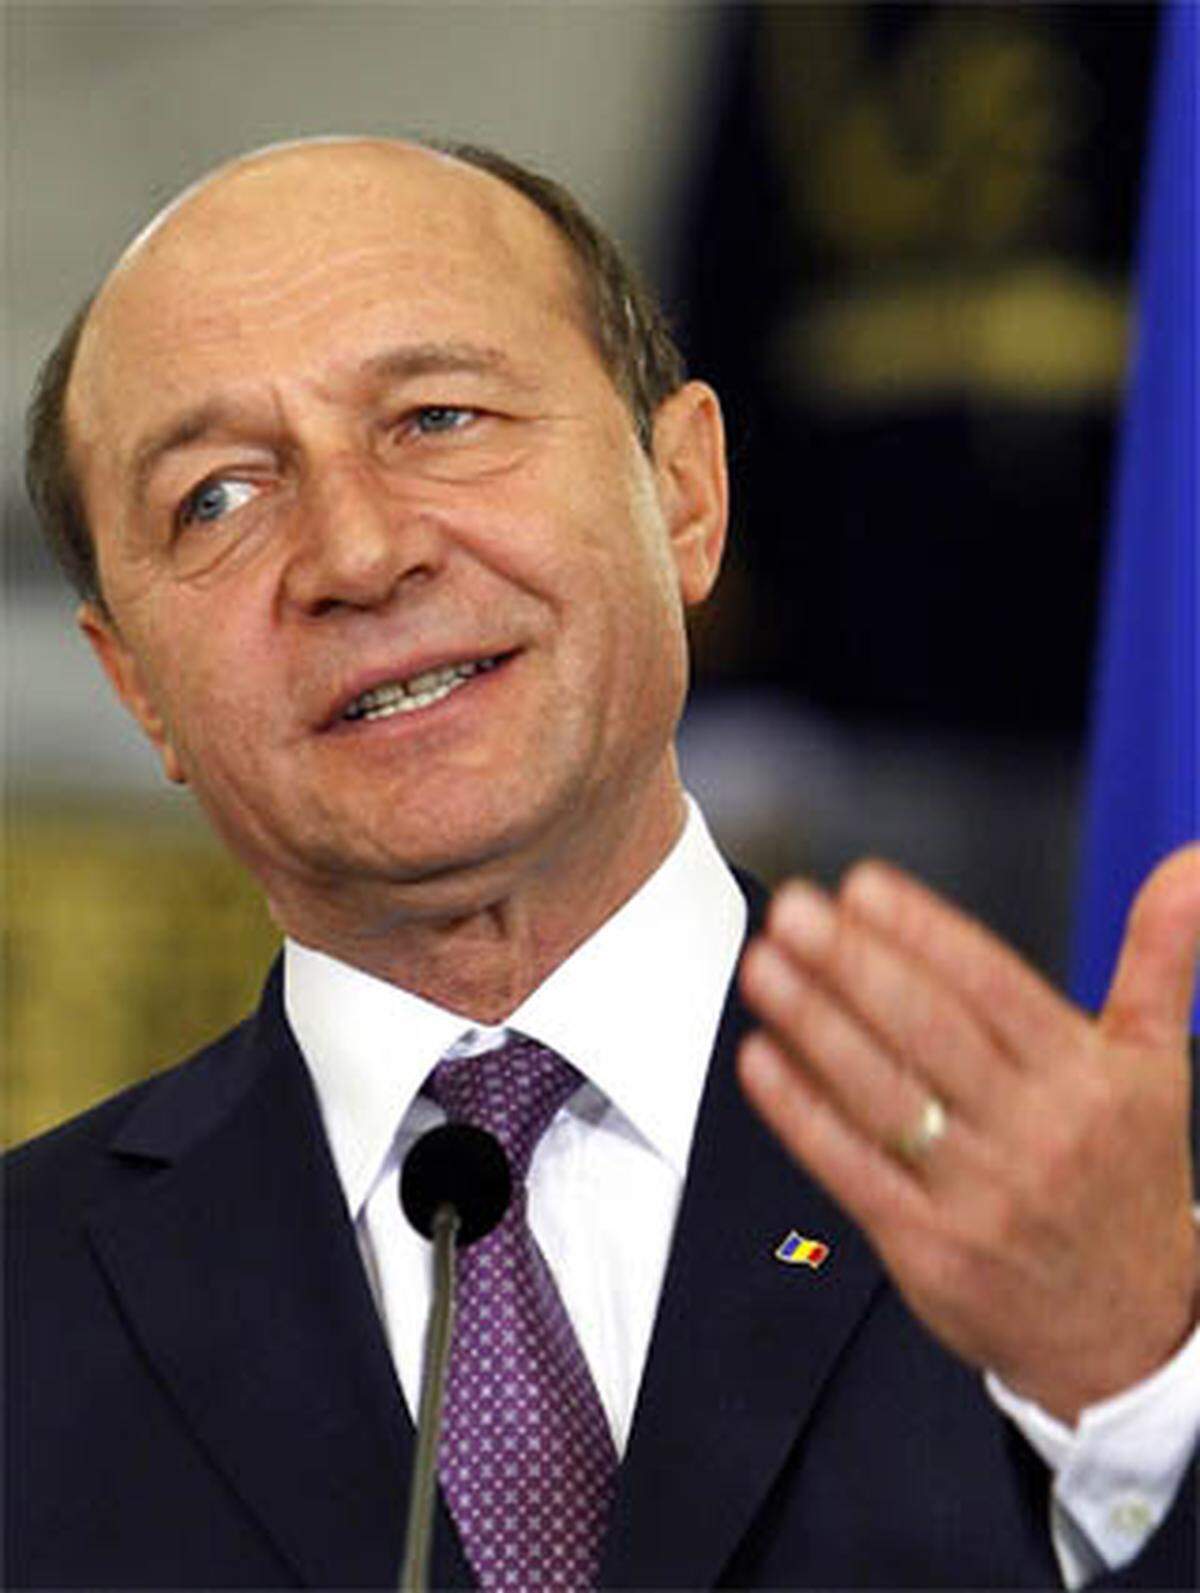 Gespalten ist das liberale Lager in Rumänien: Die regierenden Liberaldemokraten (PDL) von Staatspräsident Traian Basescu und die nationalliberale Partei (PNL) sind erbitterte Gegner. Nach der letztjährigen Regierungskrise will das Kabinett von Ministerpräsident Emil Boc Pensionen und Beamtengehälter (Letztere gar um ein Viertel!) kürzen, um die von der Krise schwer angeschlagene Volkswirtschaft zu sanieren.